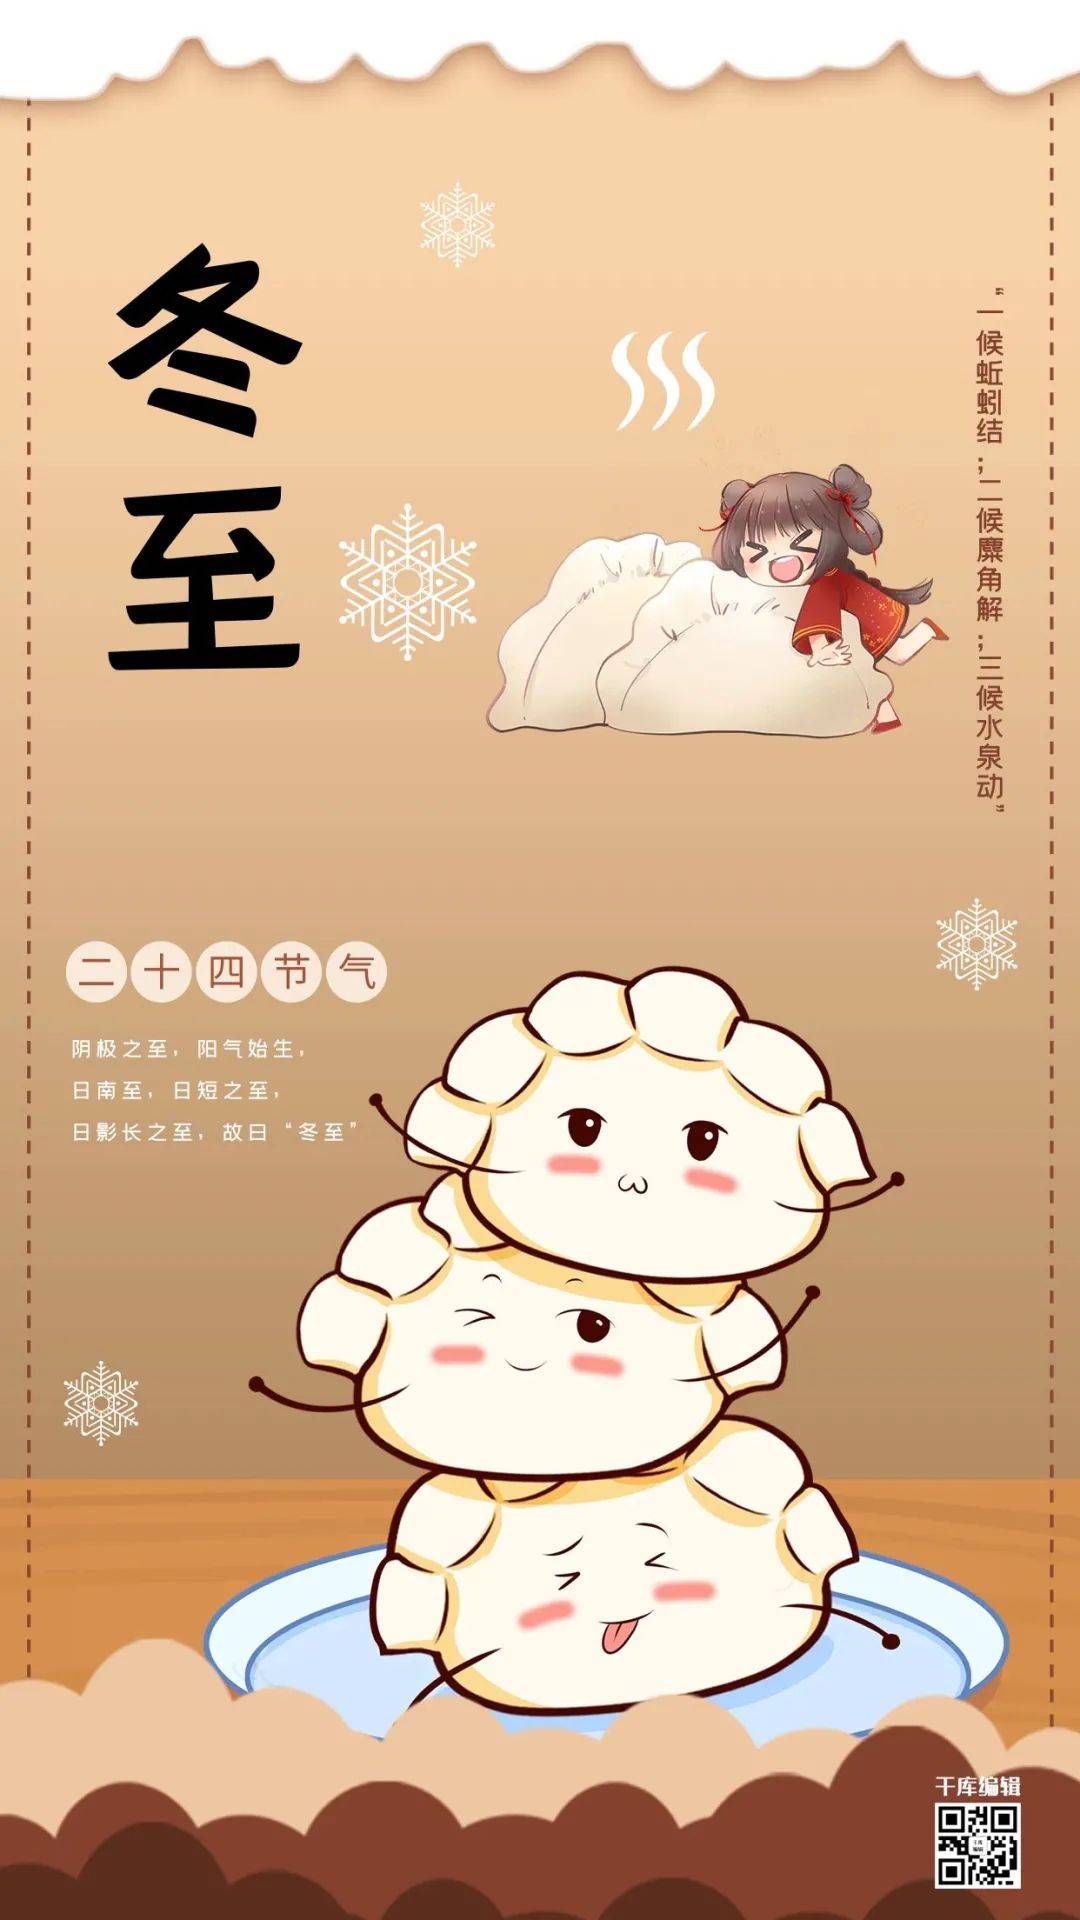 日期:12月21日 冬至意味着最冷的时刻到来 各大行业可以围绕饺子做